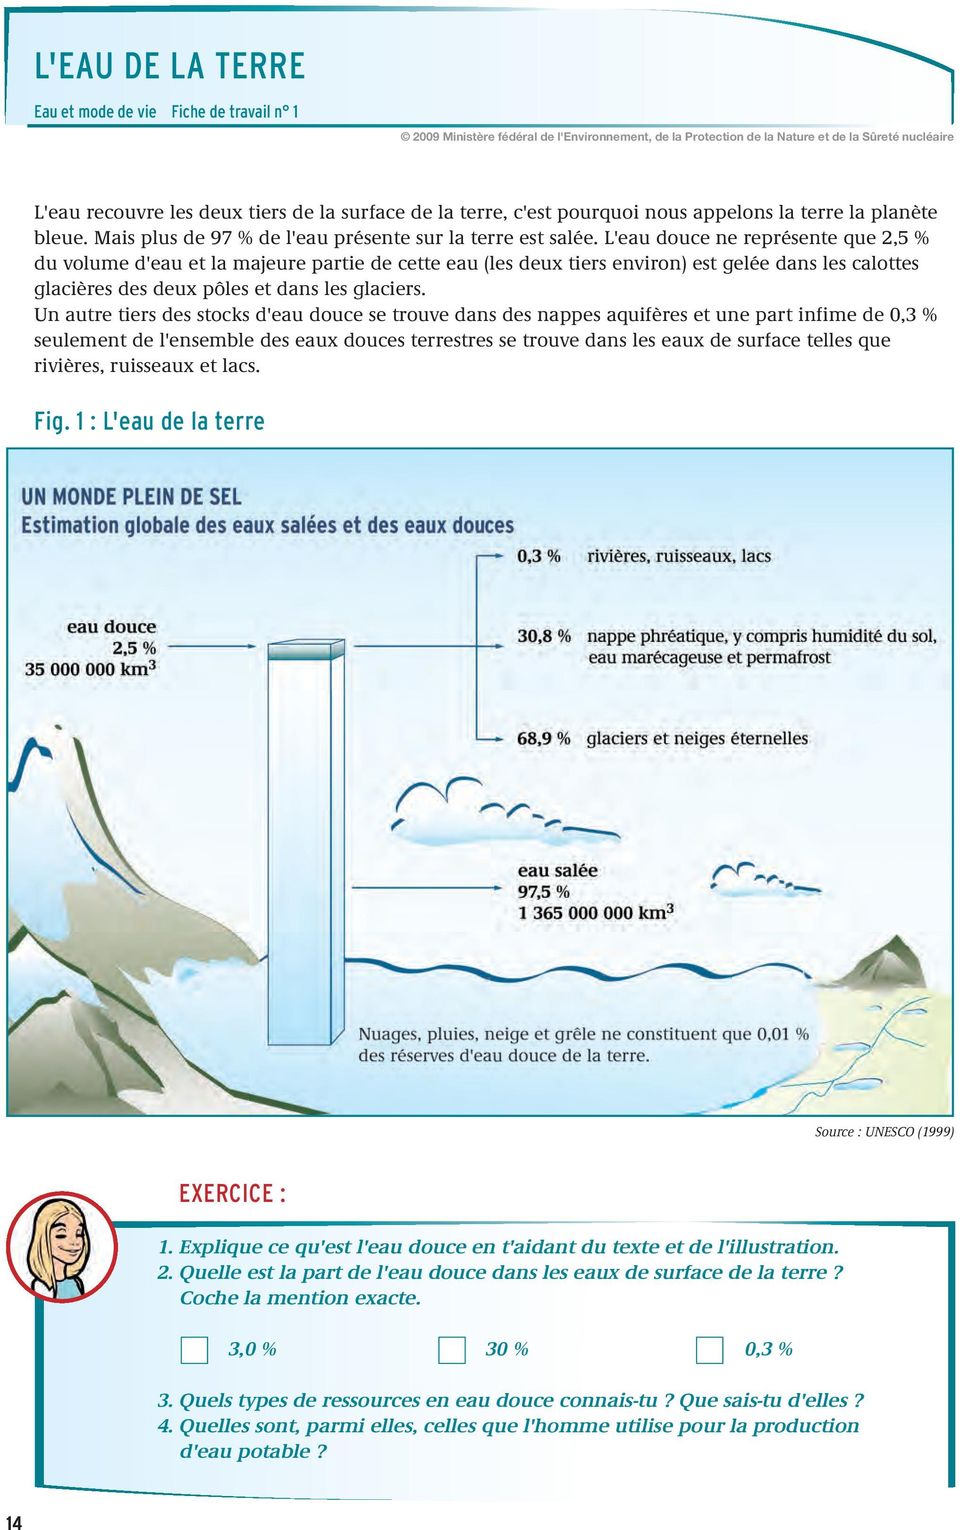 L'eau douce ne représente que 2,5 % du volume d'eau et la majeure partie de cette eau (les deux tiers environ) est gelée dans les calottes glacières des deux pôles et dans les glaciers.